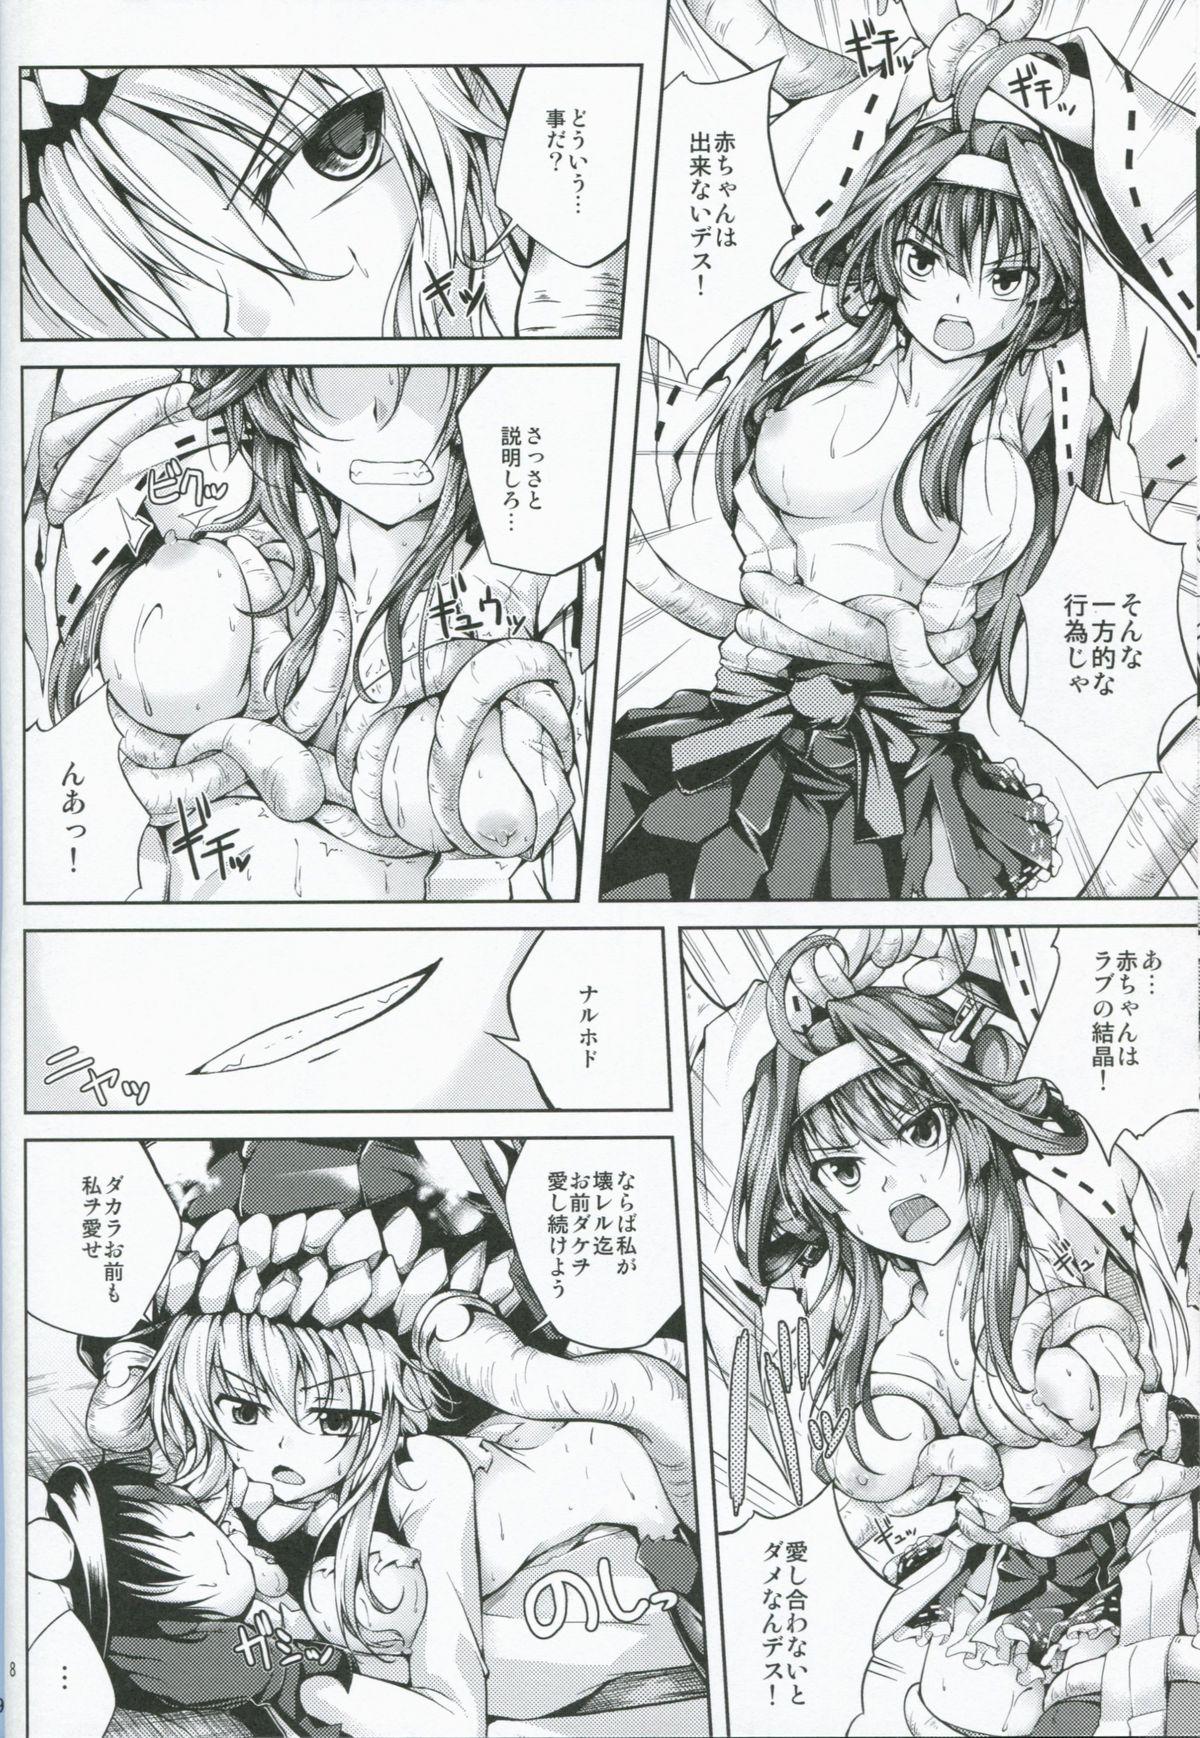 Str8 Koiiro Moyou 6 - Kantai collection Big Natural Tits - Page 7